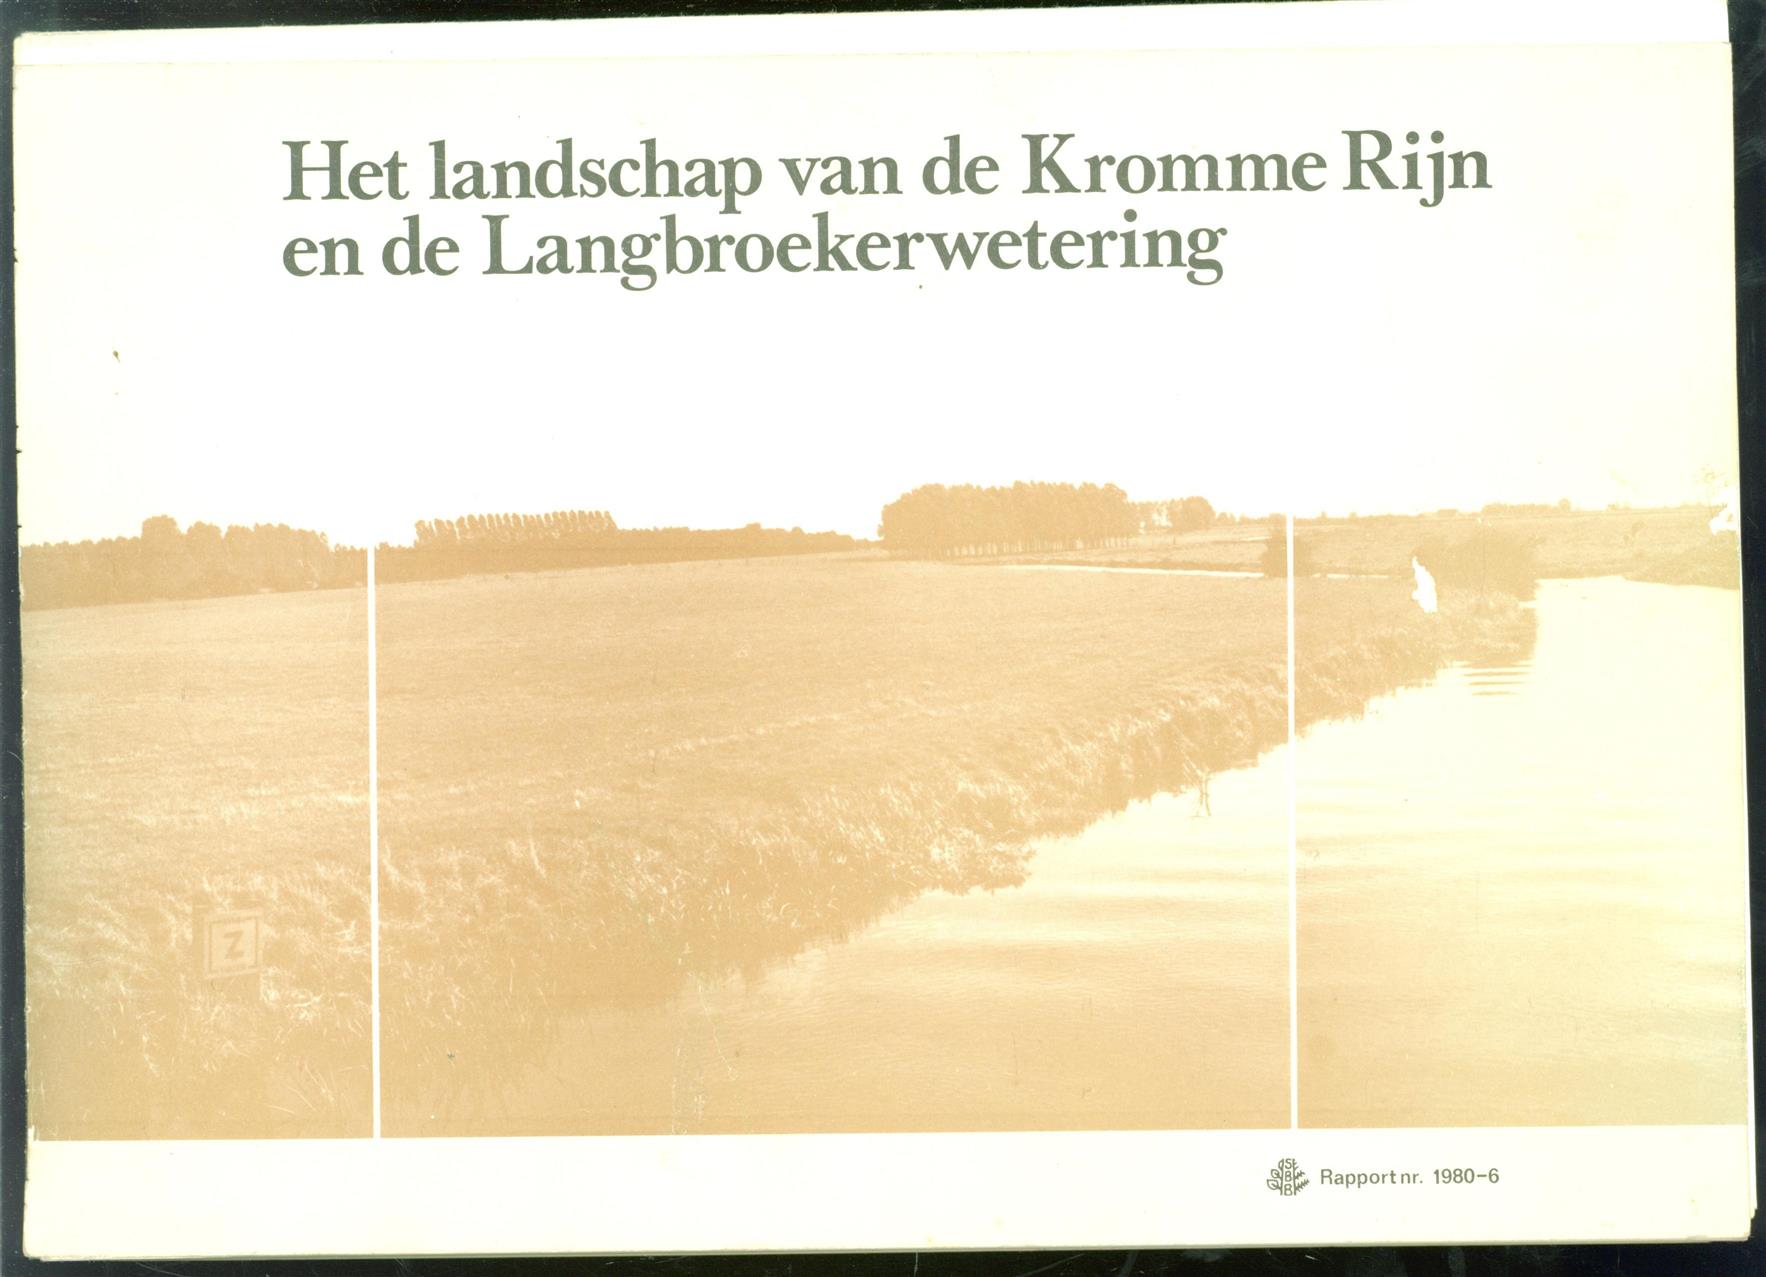 Boekhorst-van Maren, E.N. te, Staatsbosbeheer (Utrecht), Staatsbosbeheer - Het landschap van de Kromme Rijn en de Langbroekerwetering, advies voor de toekomstige landschappelijke structuur